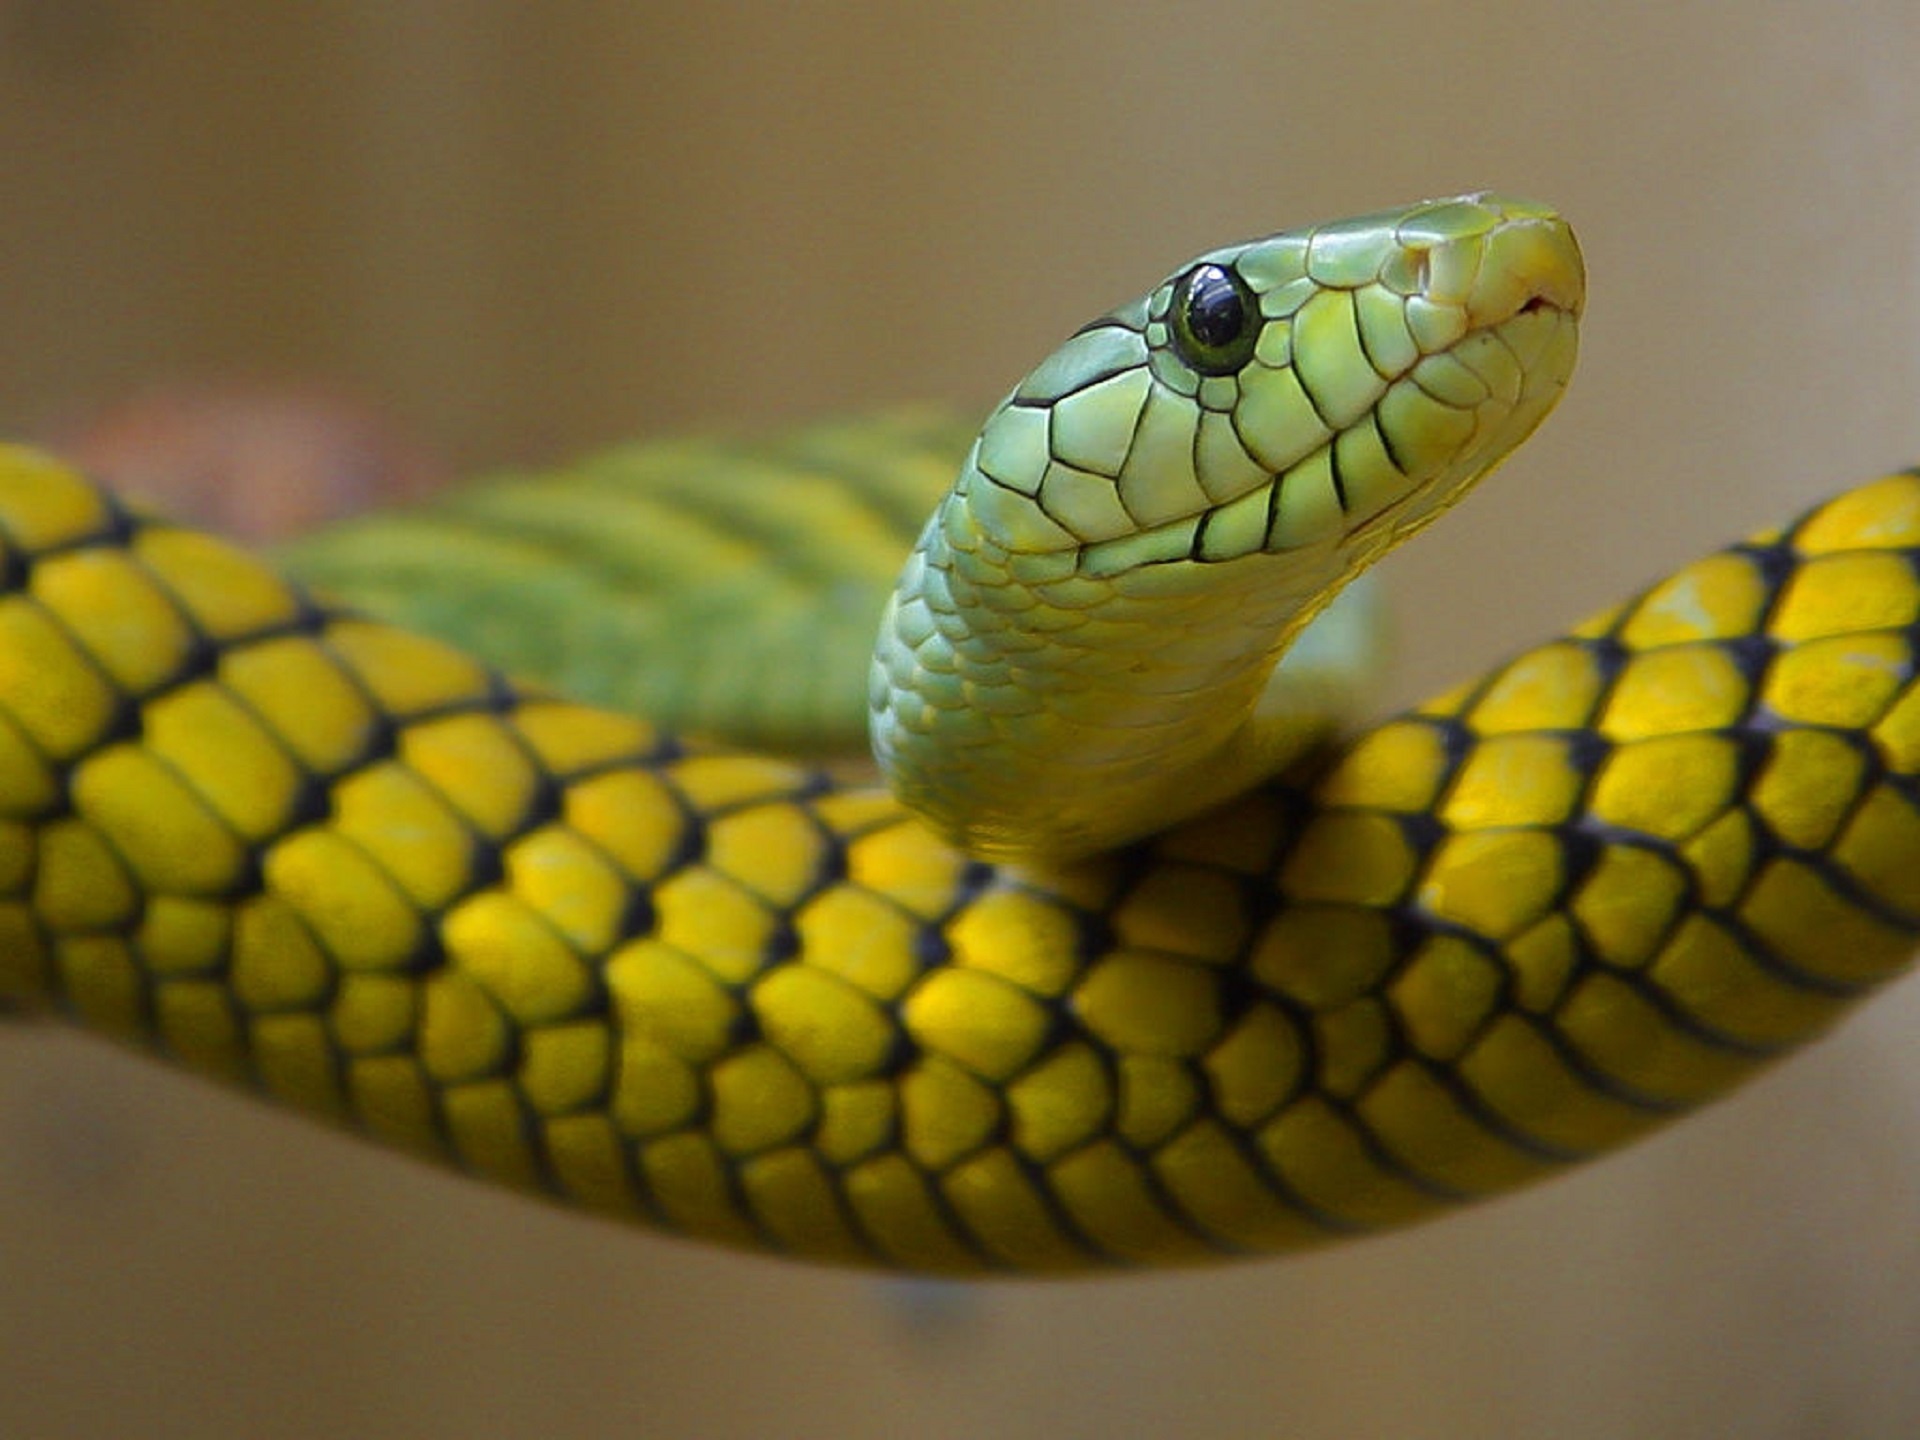 ニシグリーンマンバのヘビ 無料画像 Public Domain Pictures